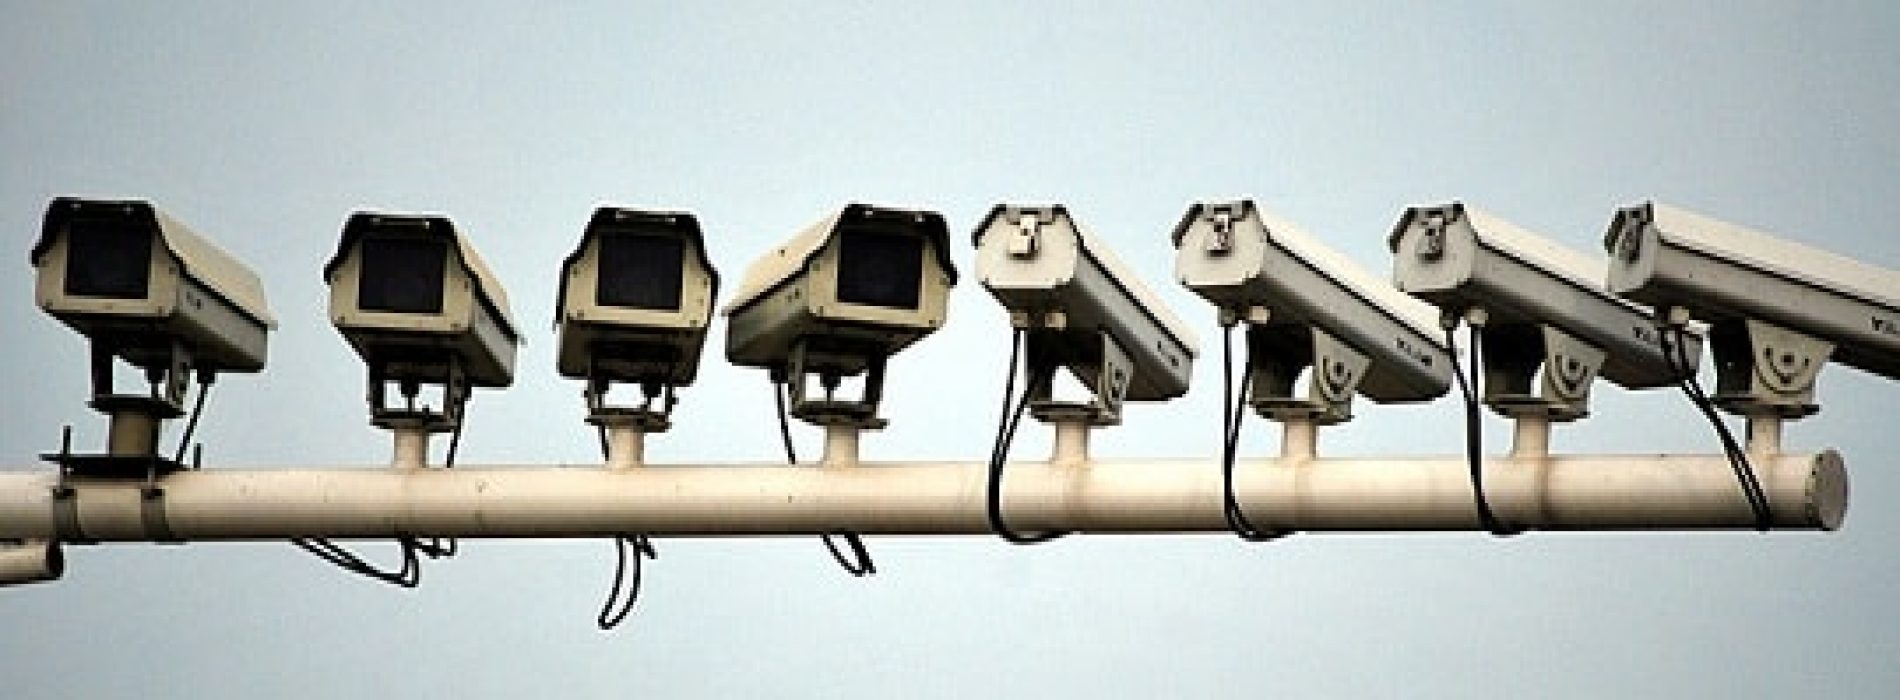 Kameraovervåking – hva er lovlig?